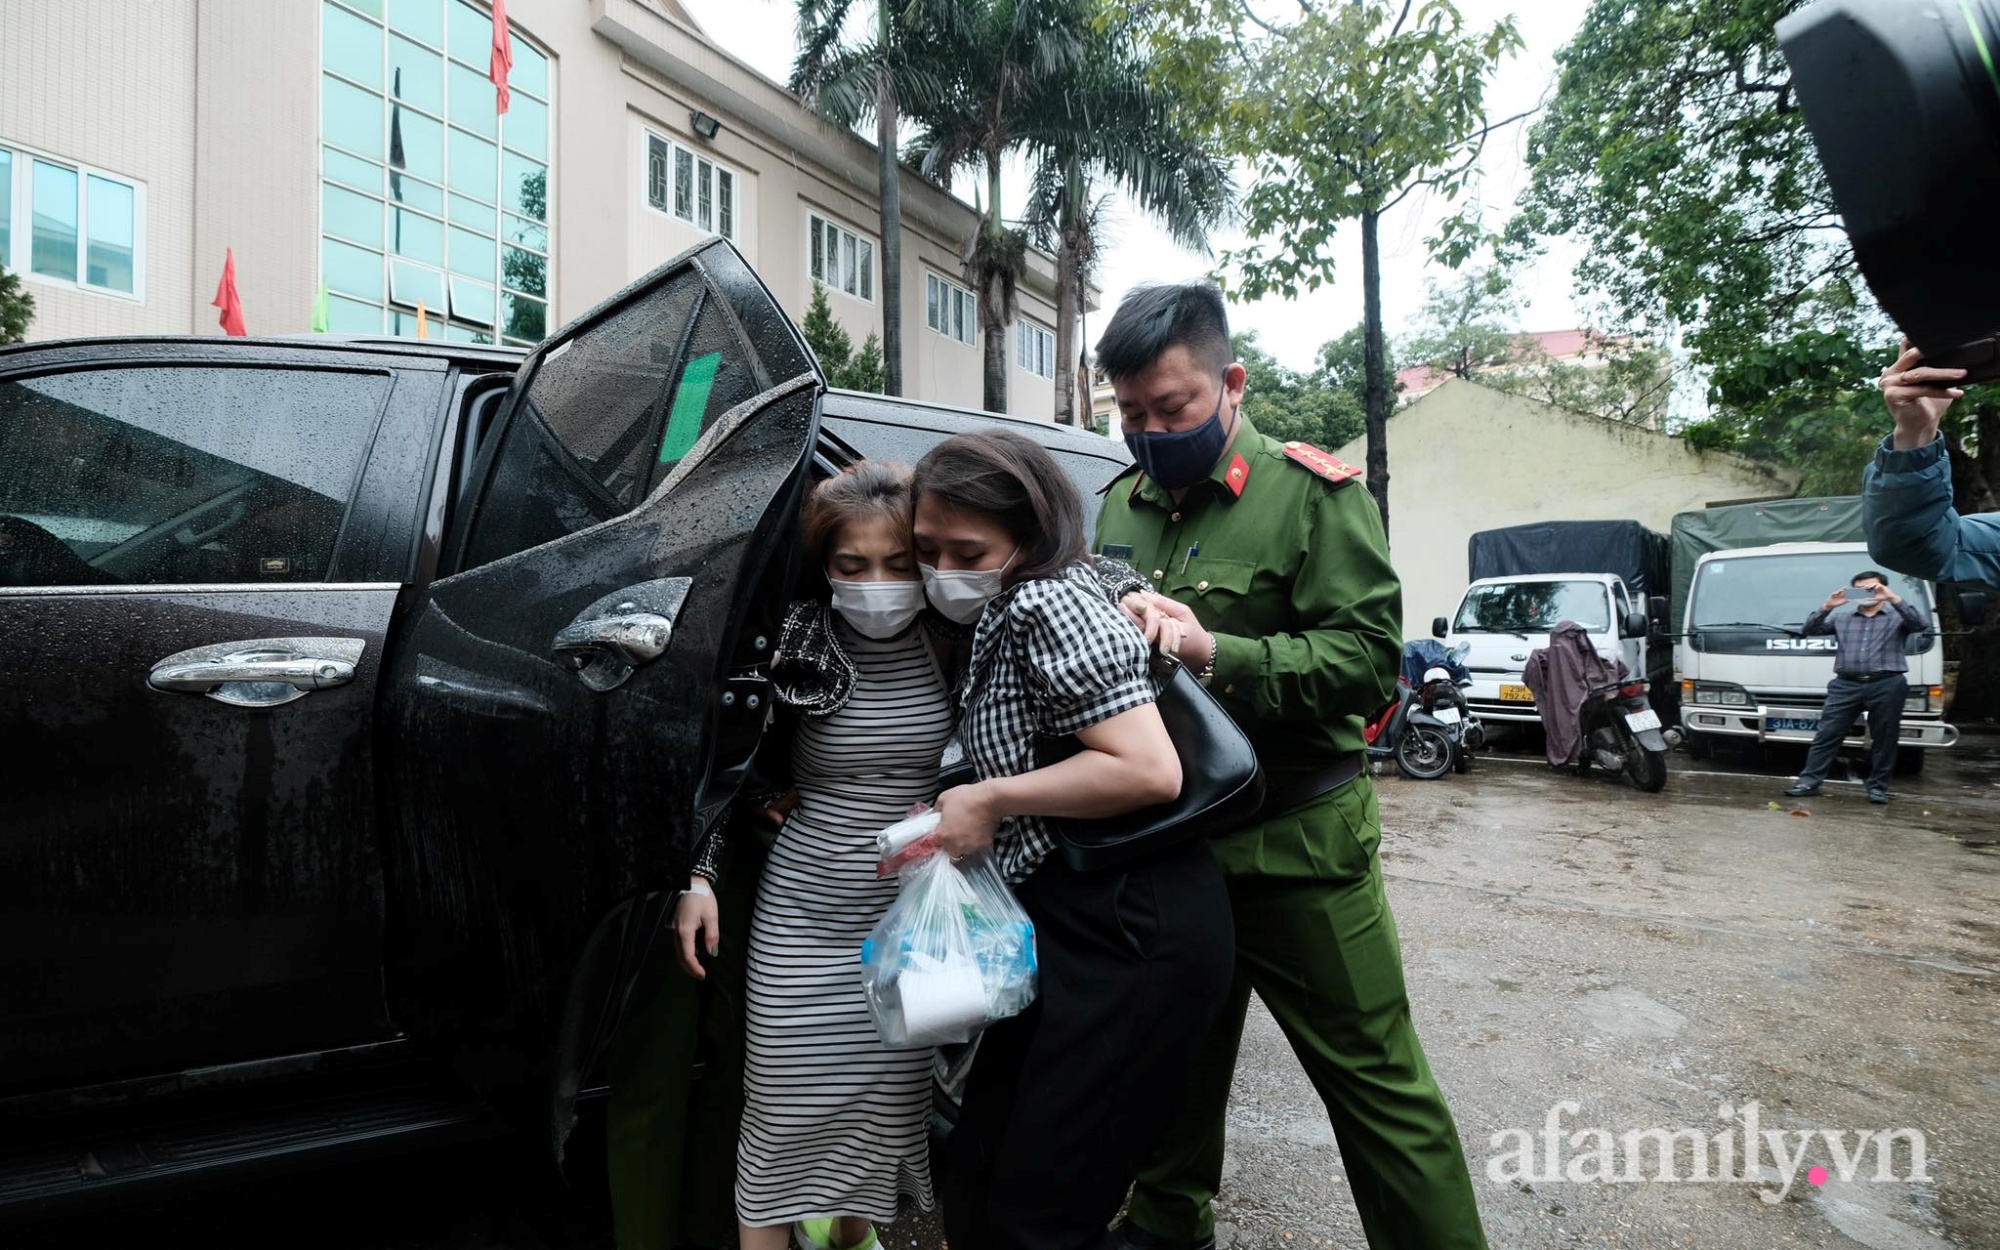 Vụ cháy nhà trọ ở Phú Đô khiến 1 cô gái trẻ tử vong: Nữ nghi phạm giả mang thai để níu kéo tình cảm, liên tục ngất xỉu  không hợp tác với công an - Ảnh 4.